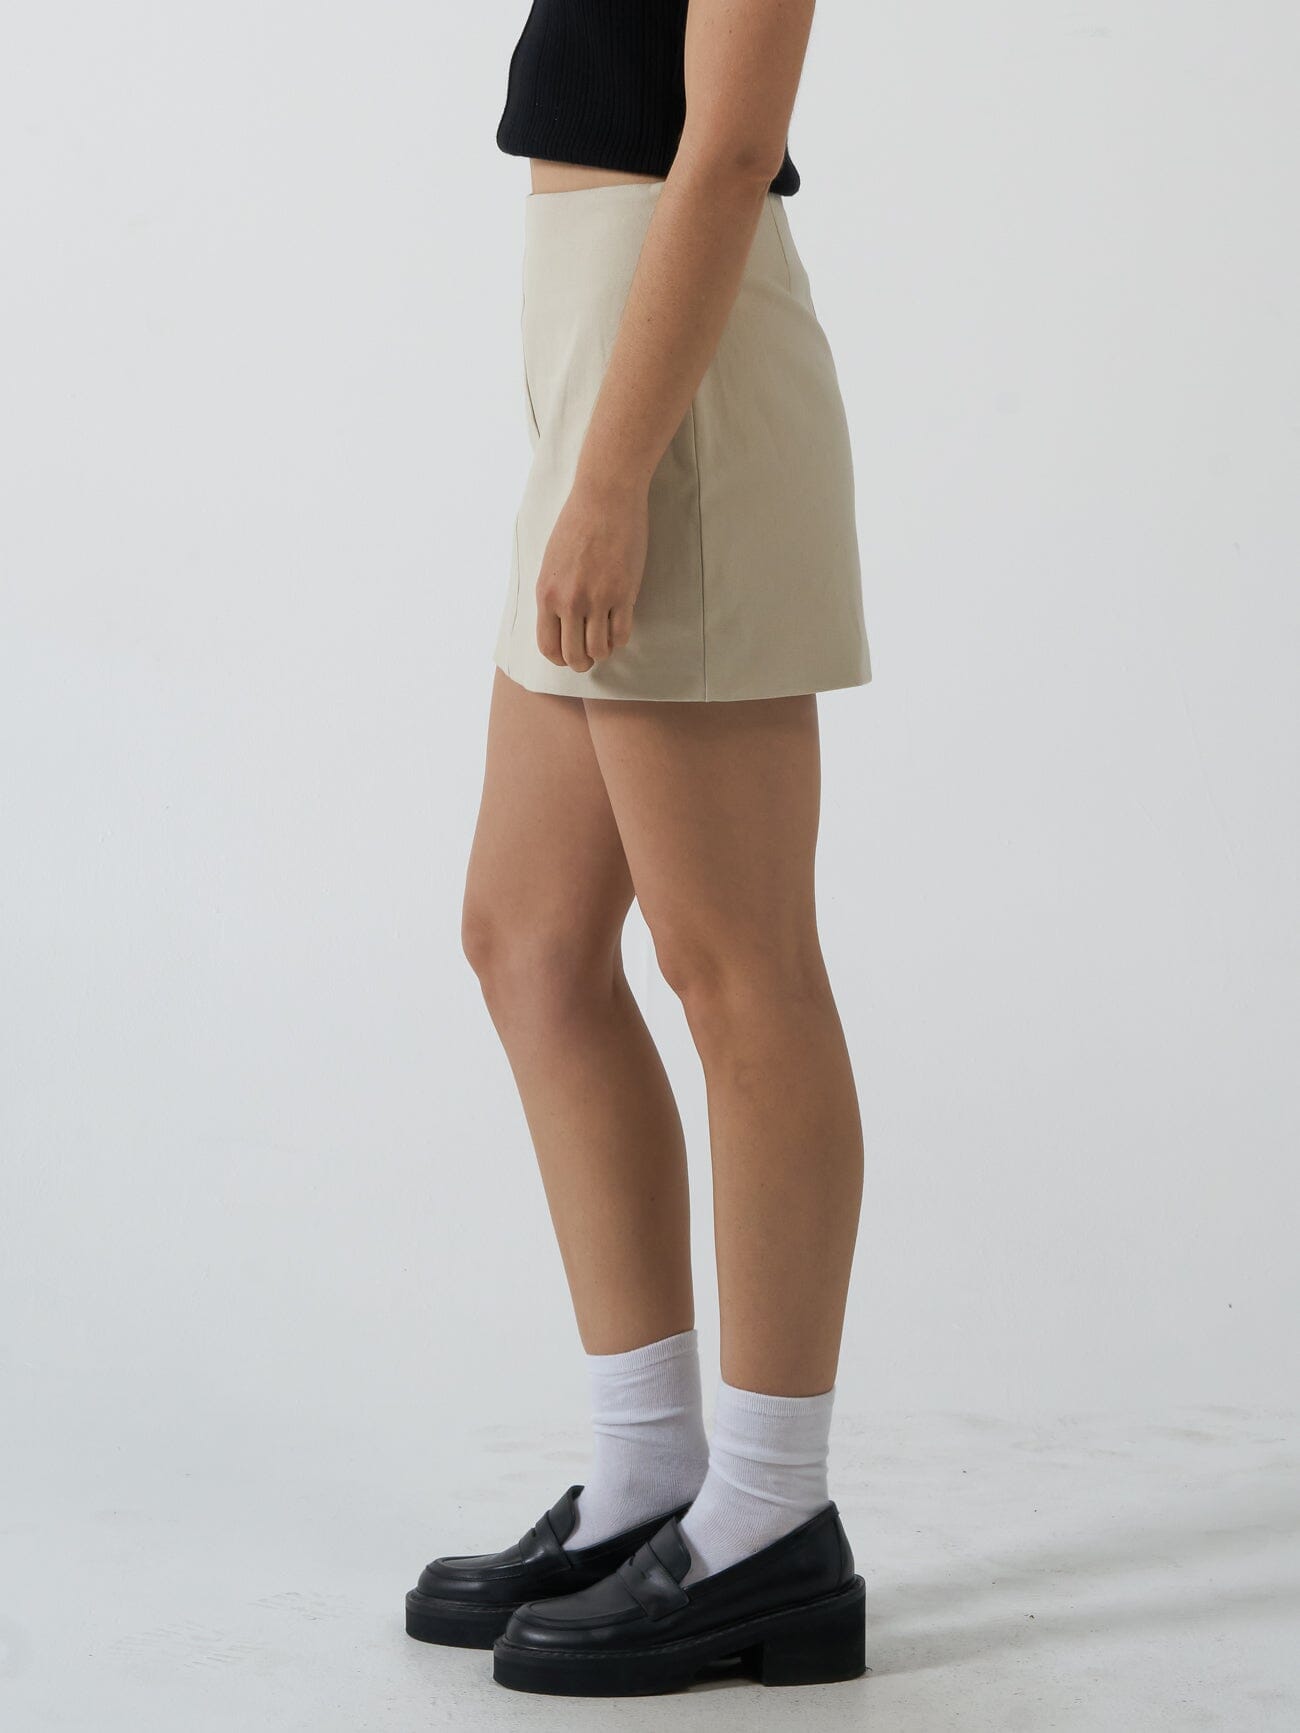 Clarity Mini Skirt - Fog